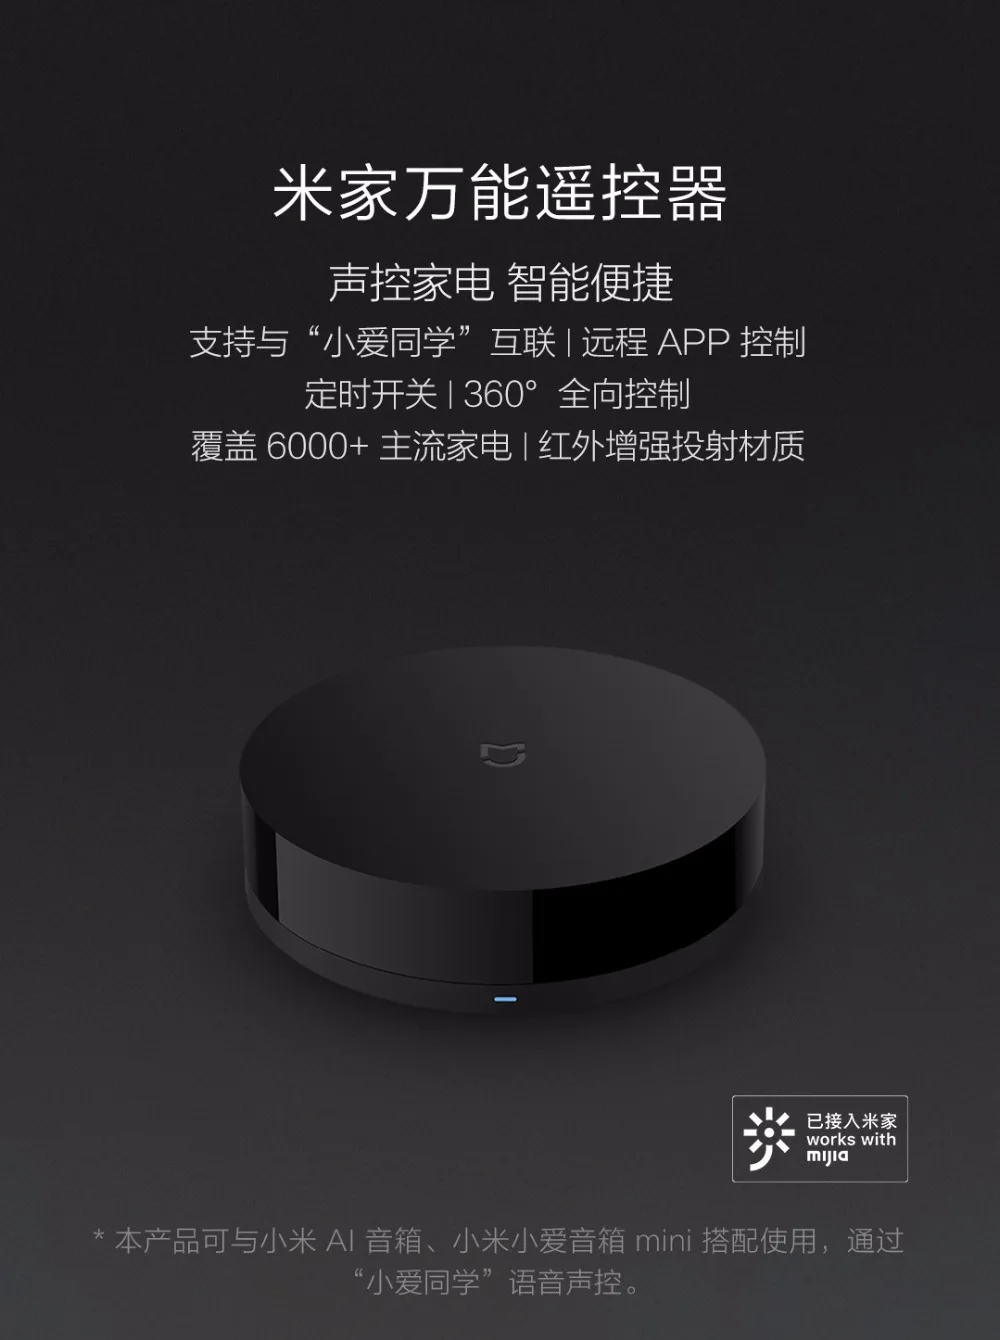 Сяо mi Цзя Универсальный Интеллектуальный smart ПДУ WI-FI+ ИК переключатель 360 градусов домашней автоматизации mi smart sensor